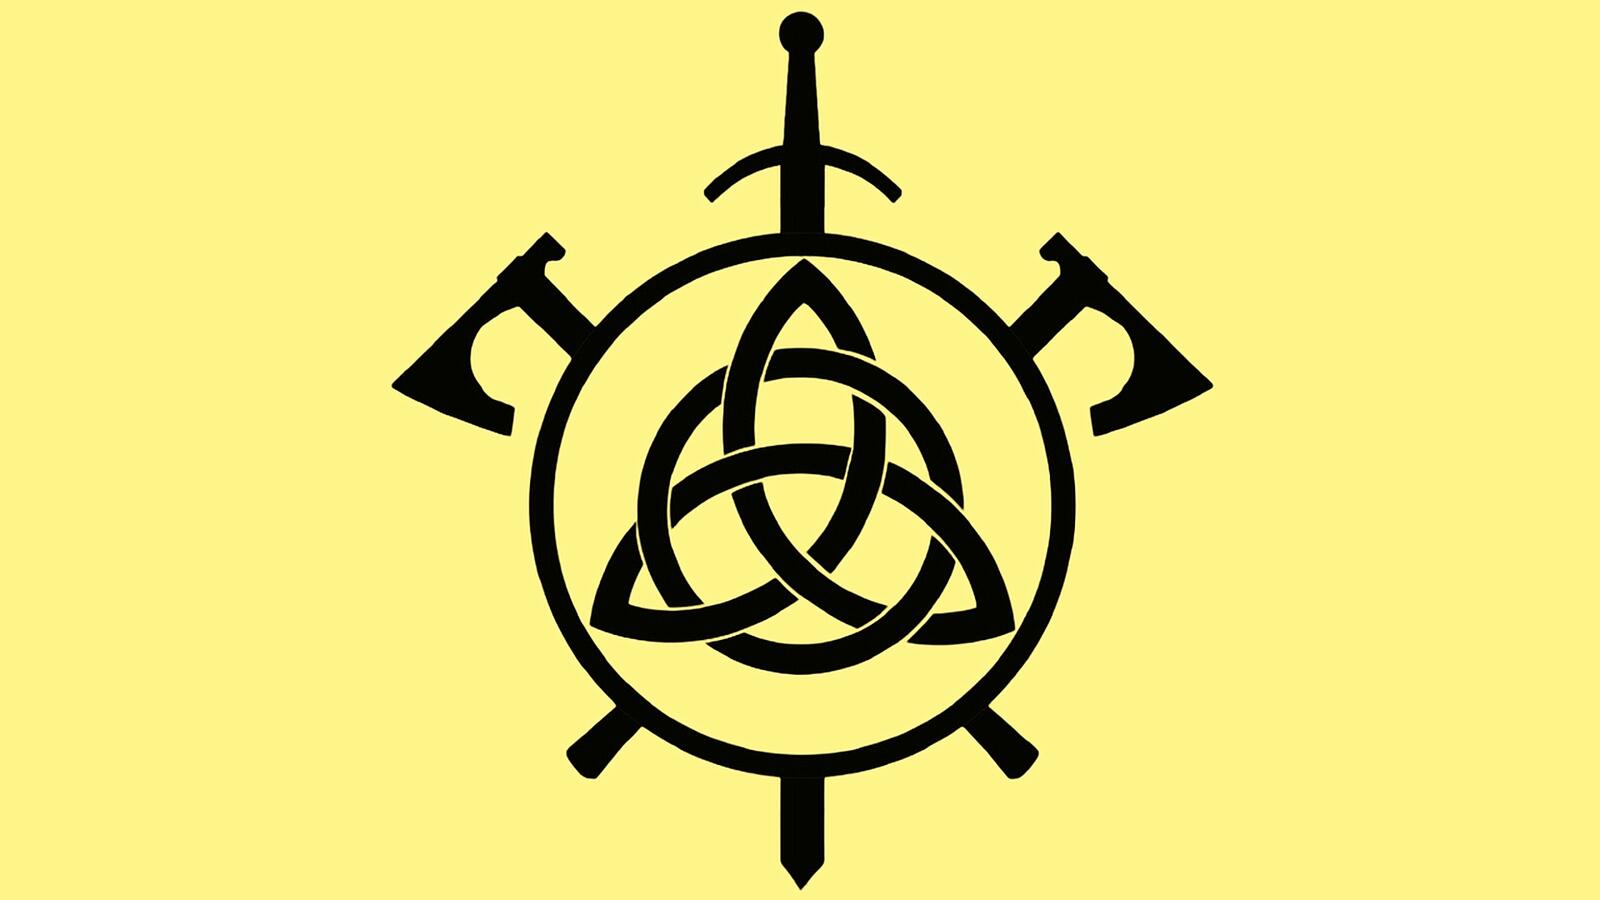 Бесплатное фото Эмблема рыцарского клуба Бродекс